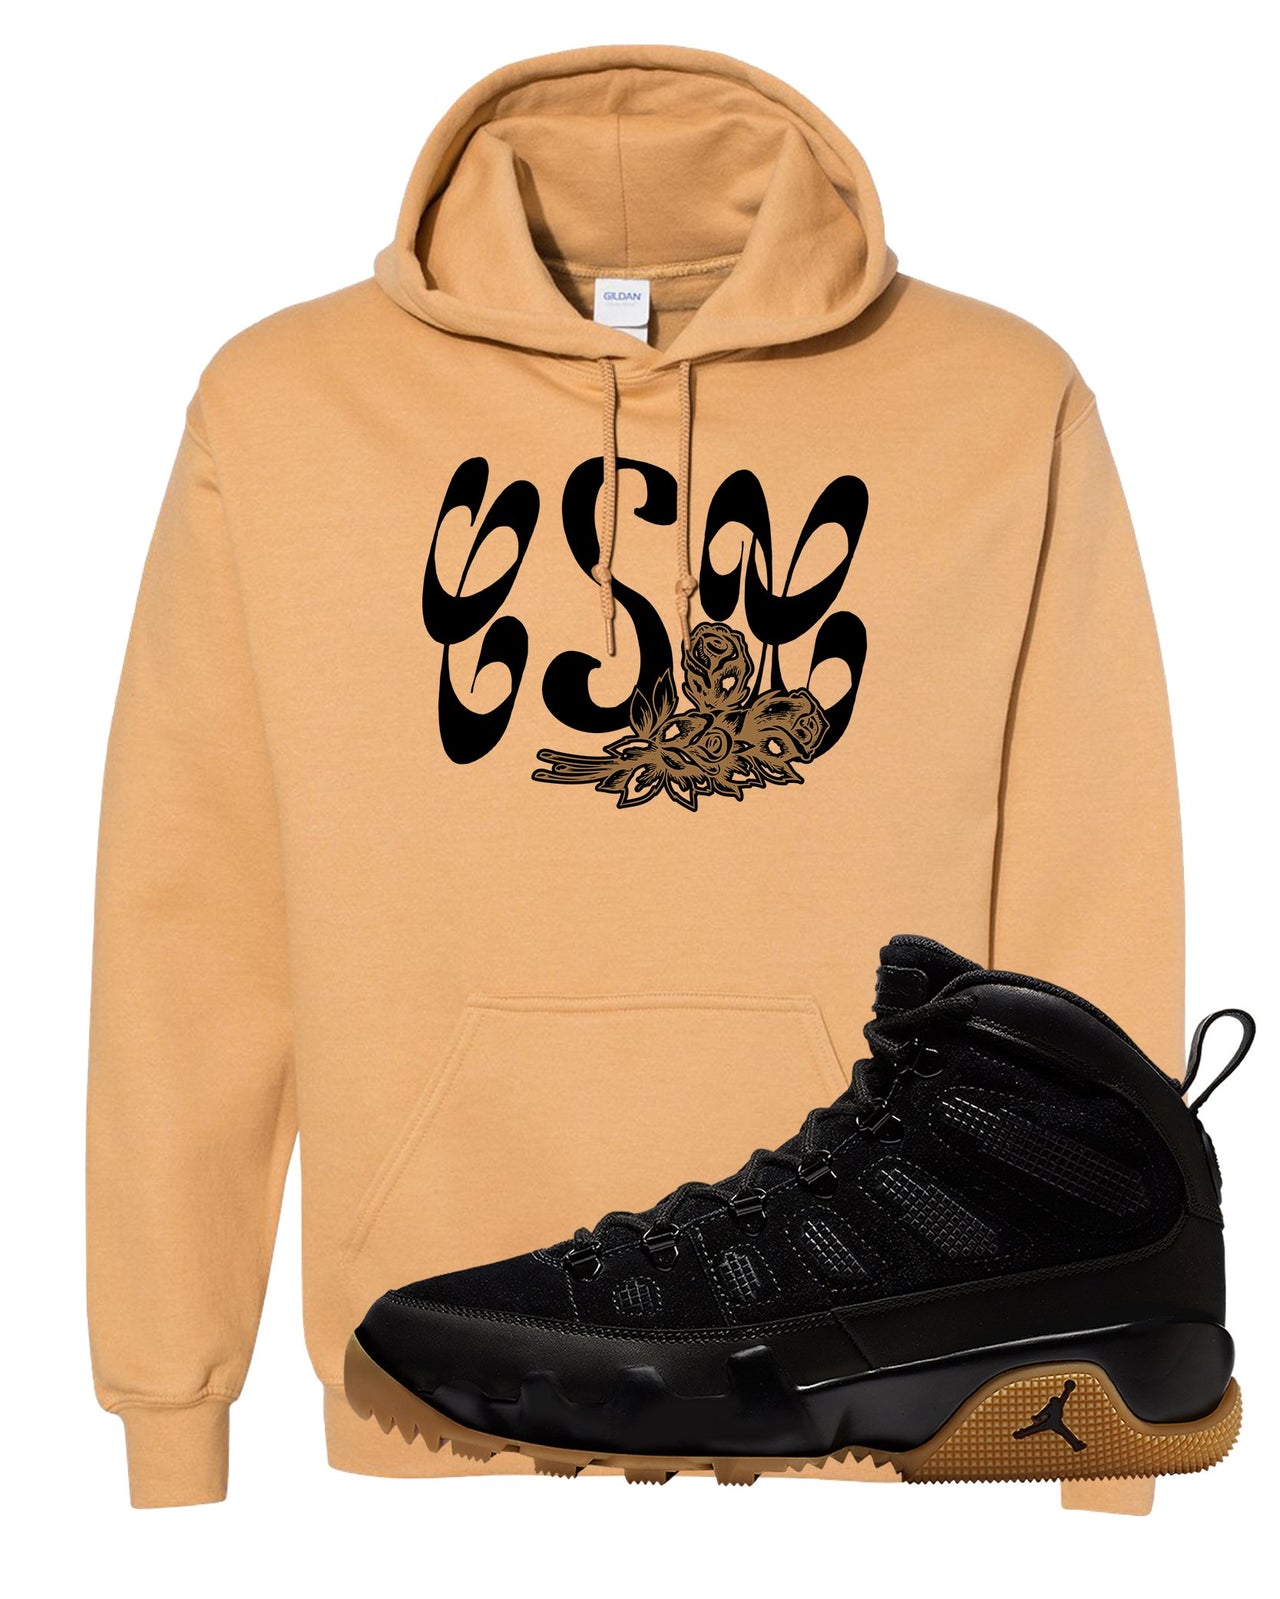 NRG Black Gum Boot 9s Hoodie | Certified Sneakerhead, Old Gold